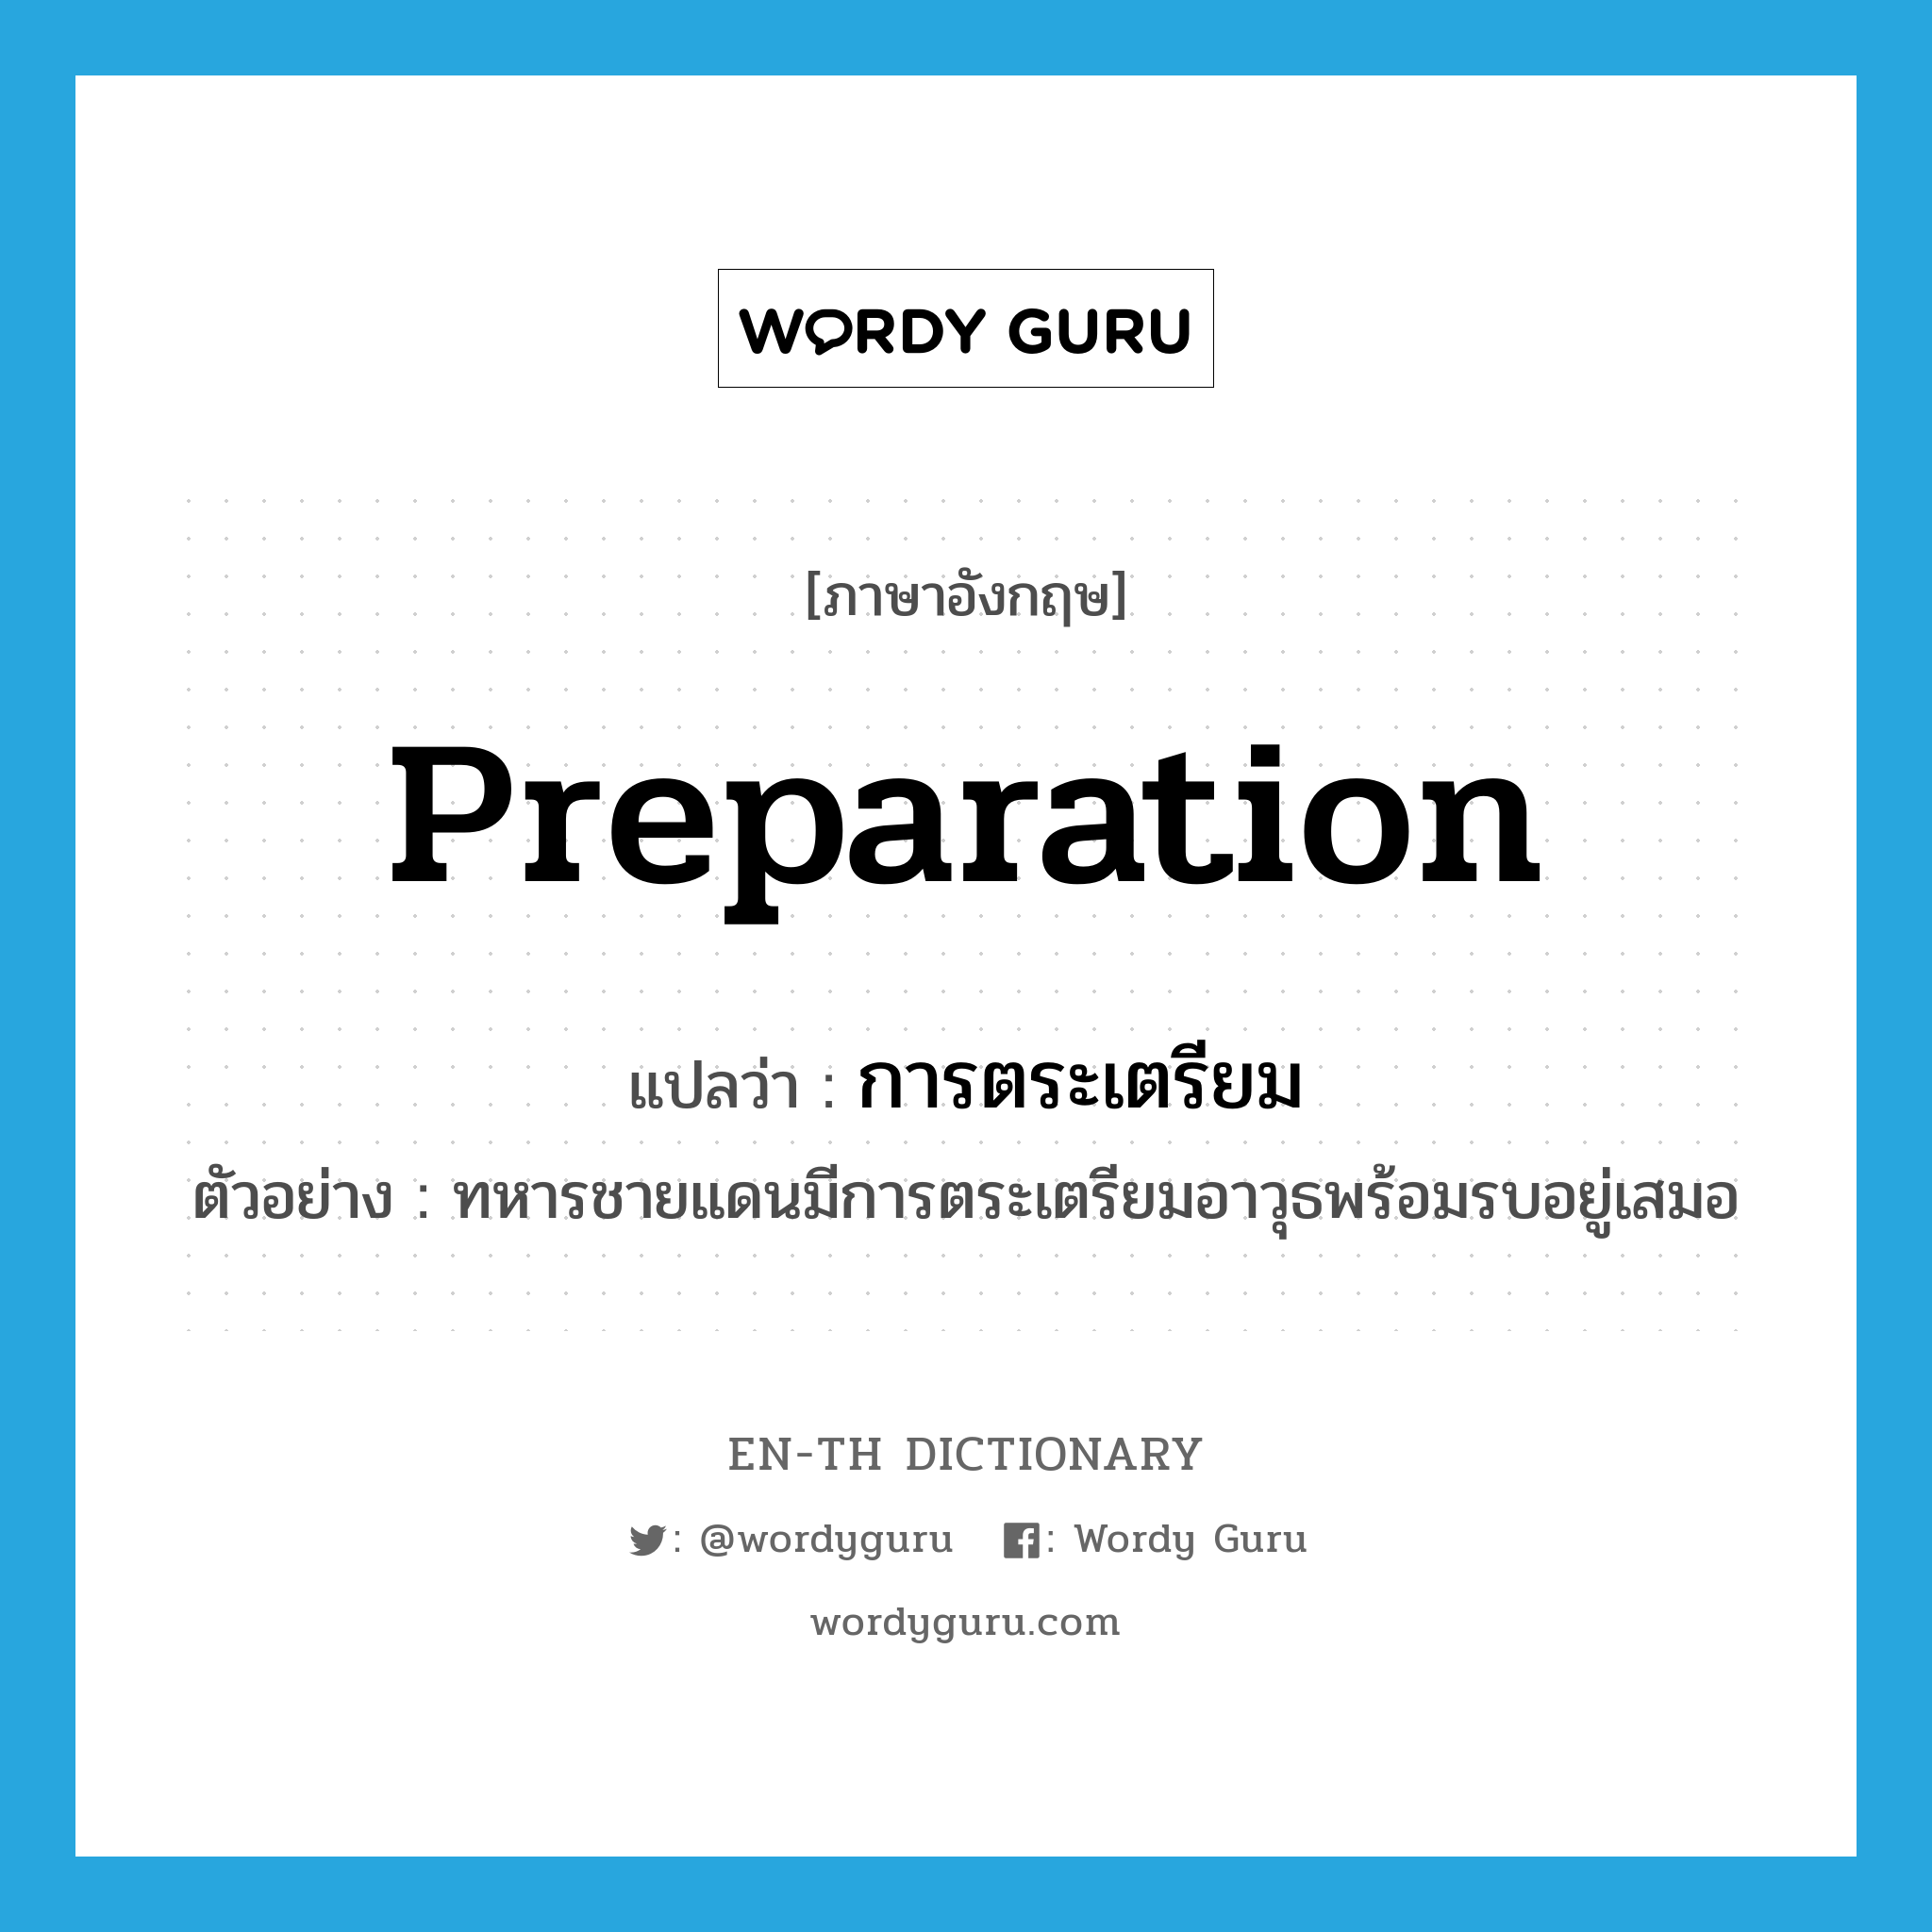 preparation แปลว่า?, คำศัพท์ภาษาอังกฤษ preparation แปลว่า การตระเตรียม ประเภท N ตัวอย่าง ทหารชายแดนมีการตระเตรียมอาวุธพร้อมรบอยู่เสมอ หมวด N